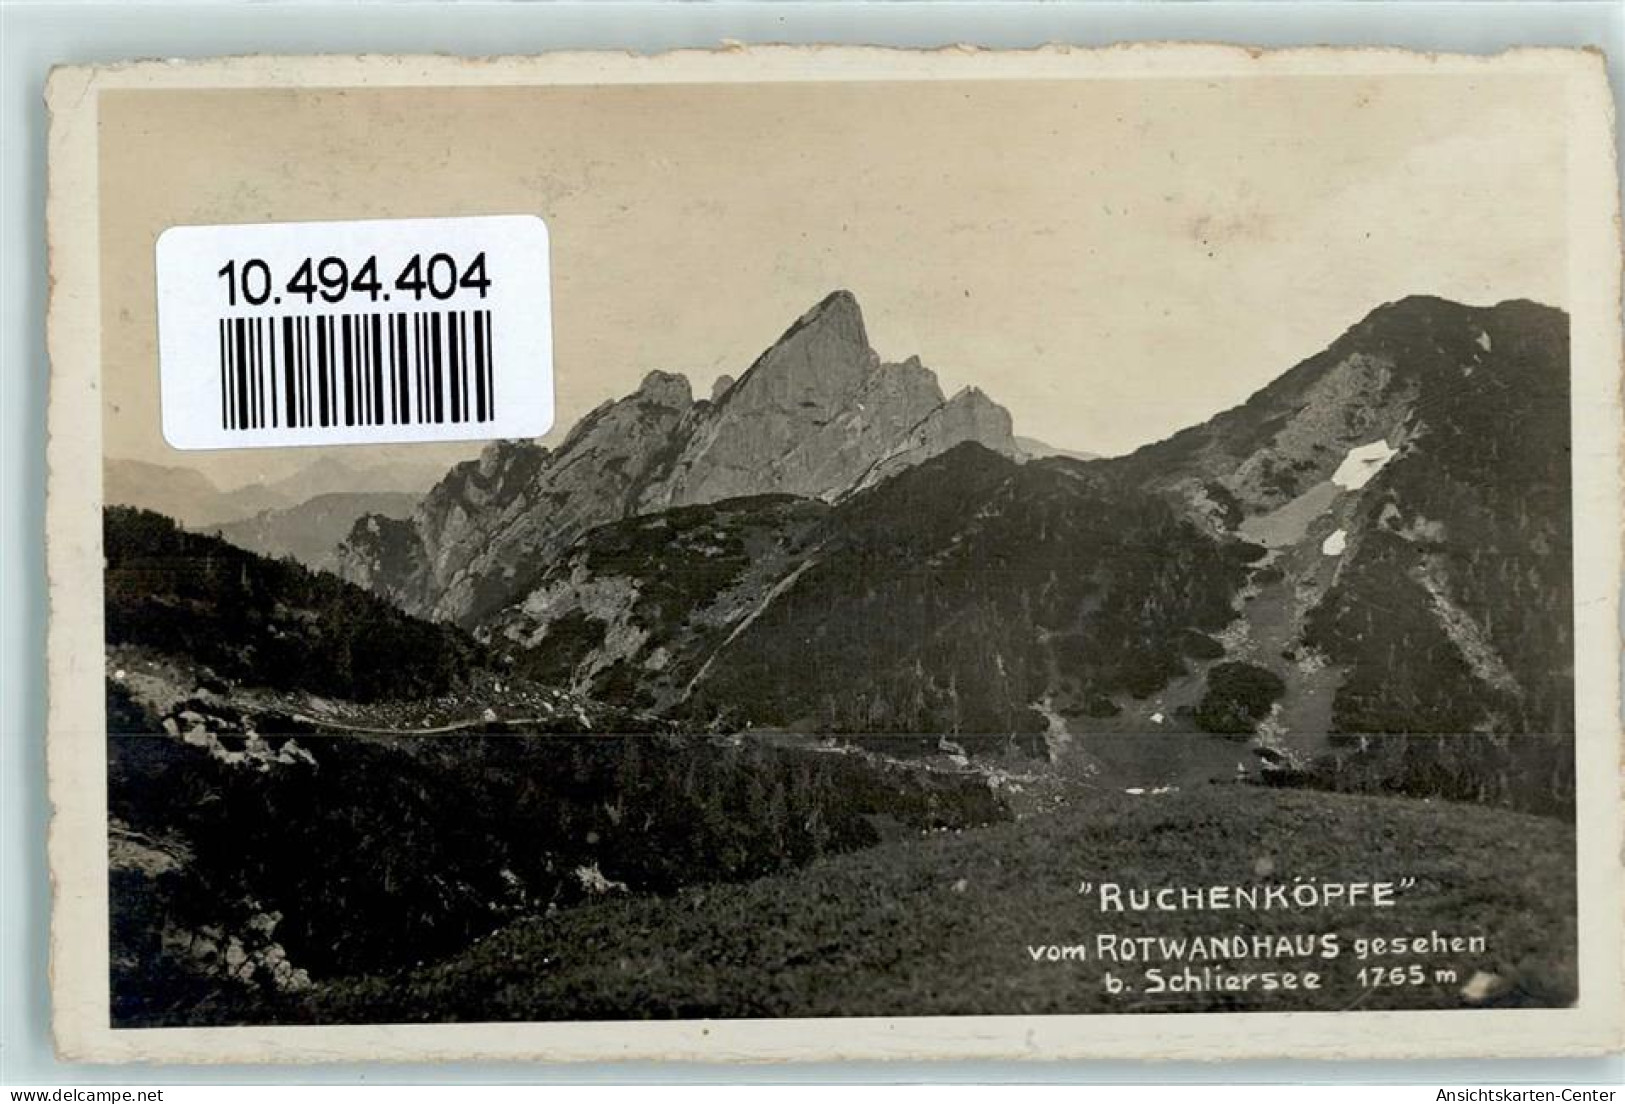 10494404 - Rotwandhaus - Poste & Facteurs